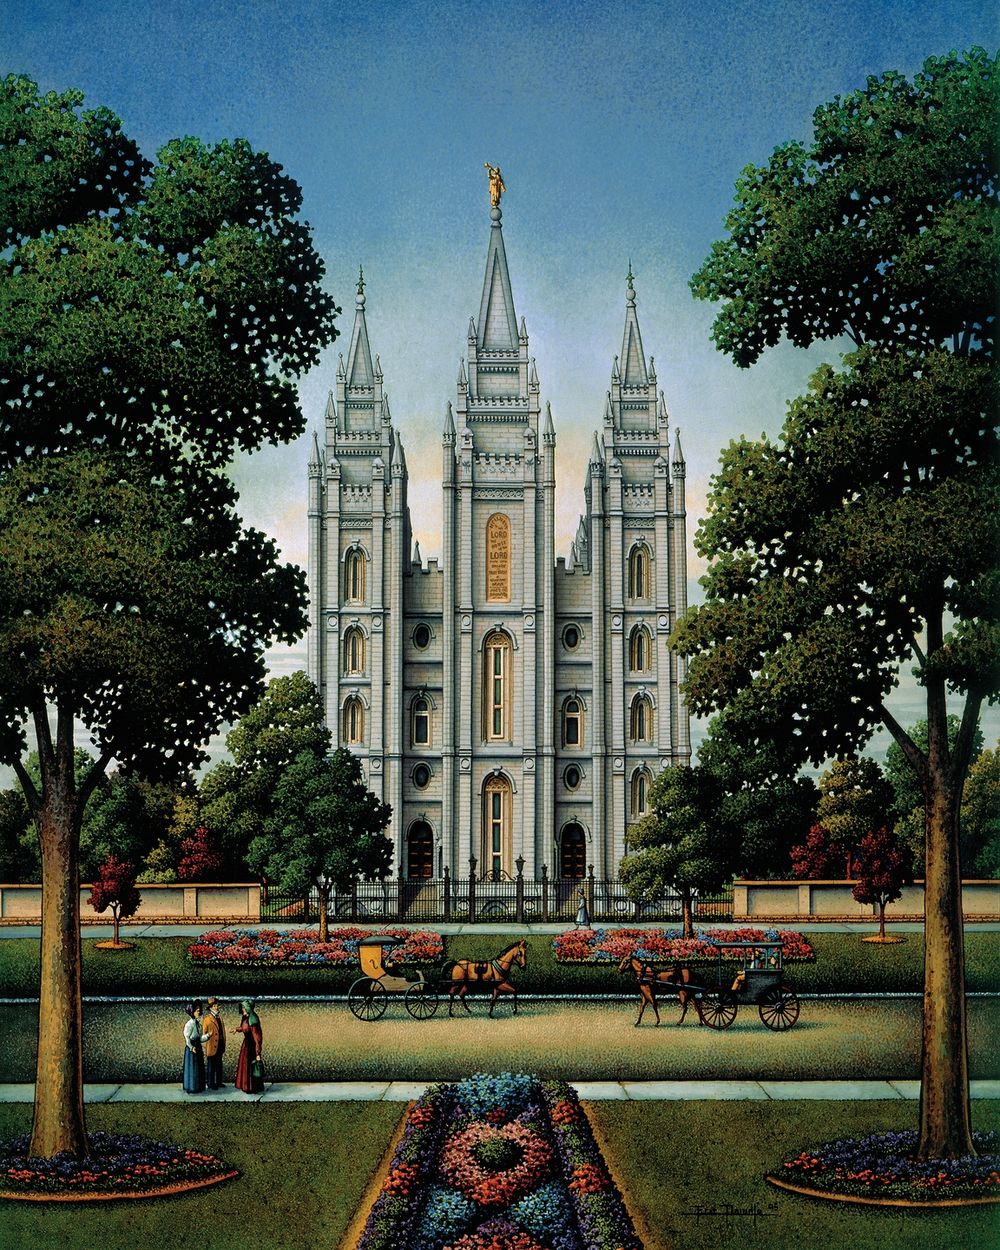 Salt Lake Temple - Personal Puzzle - 210 Piece